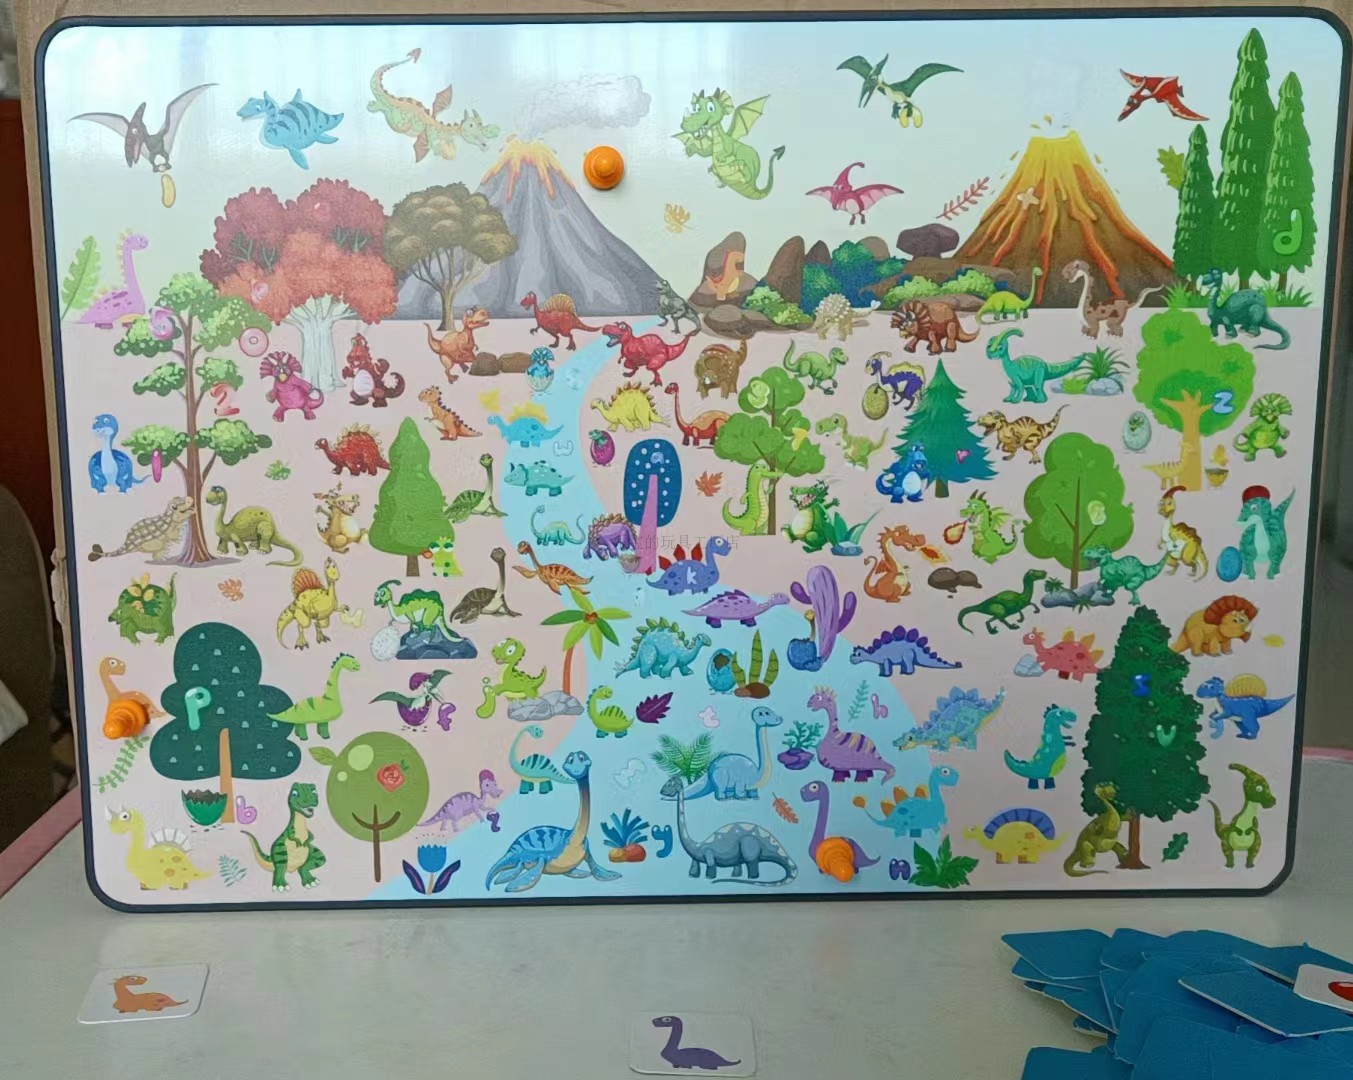 仁博桌面游戏亲子互动恐龙世界小侦探找图多功能绘画板3岁以上